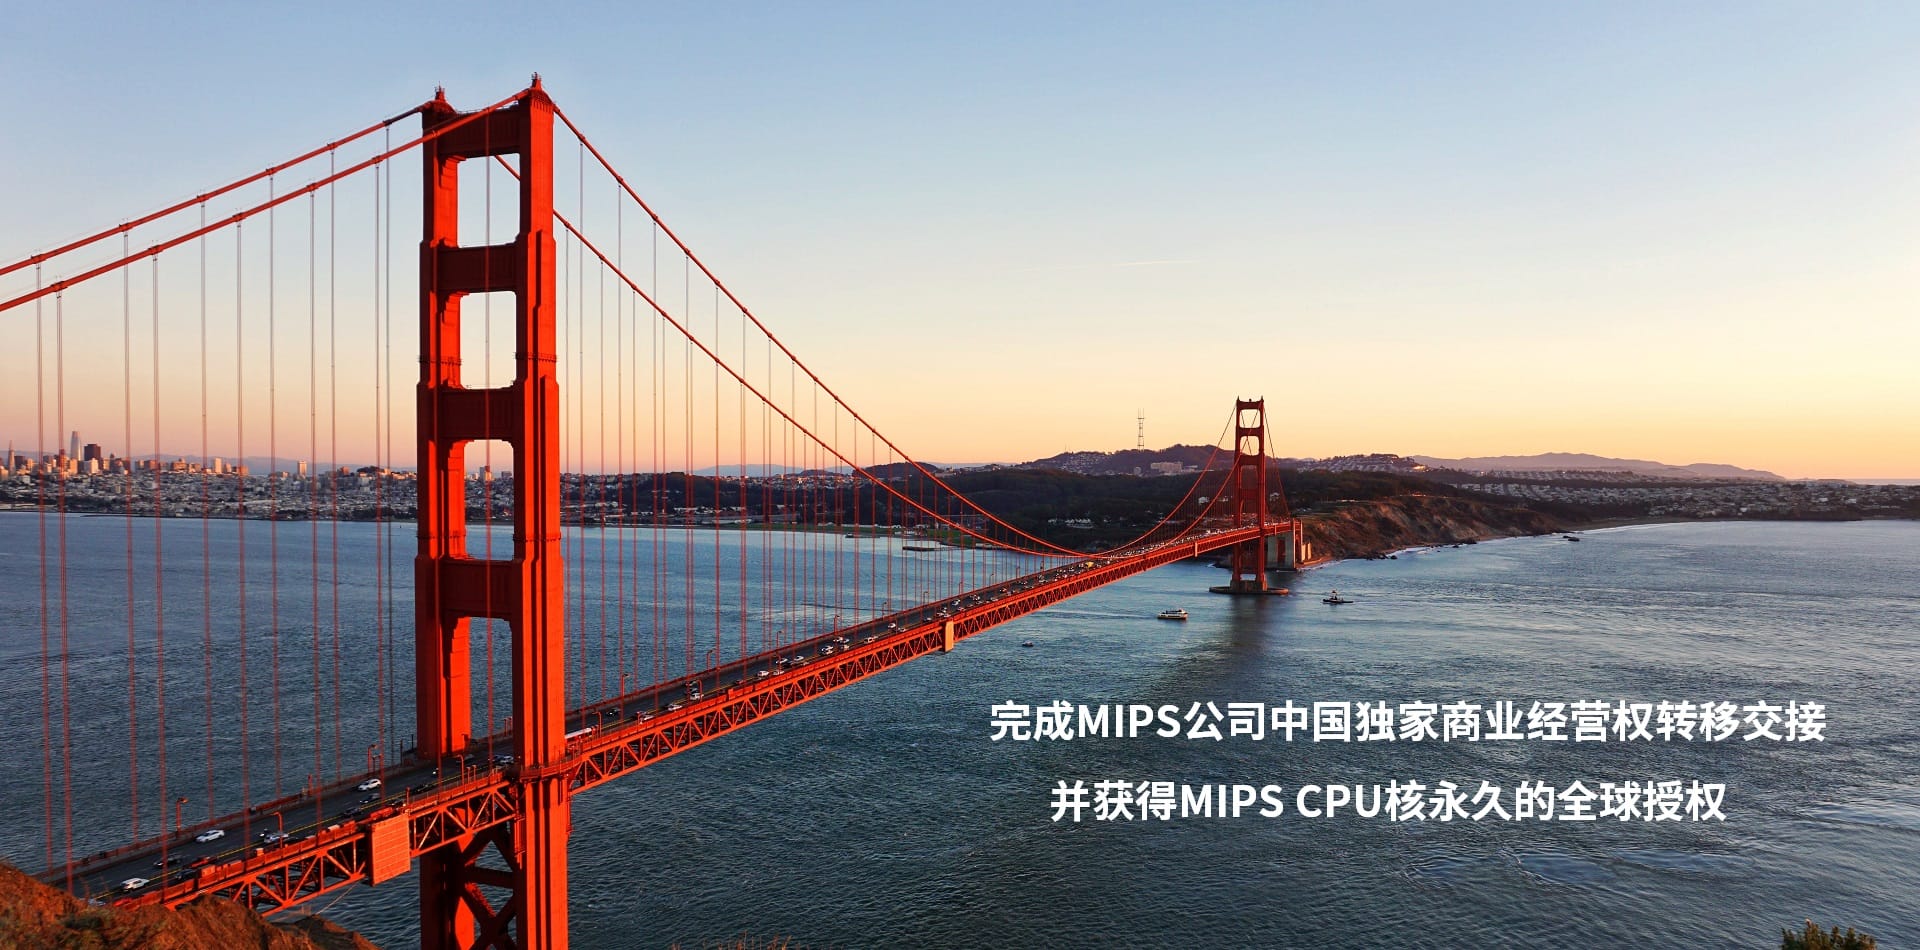 完成MIPS公司中国独家商业经营权转移交接 并获得MIPS CPU核永久的全球授权